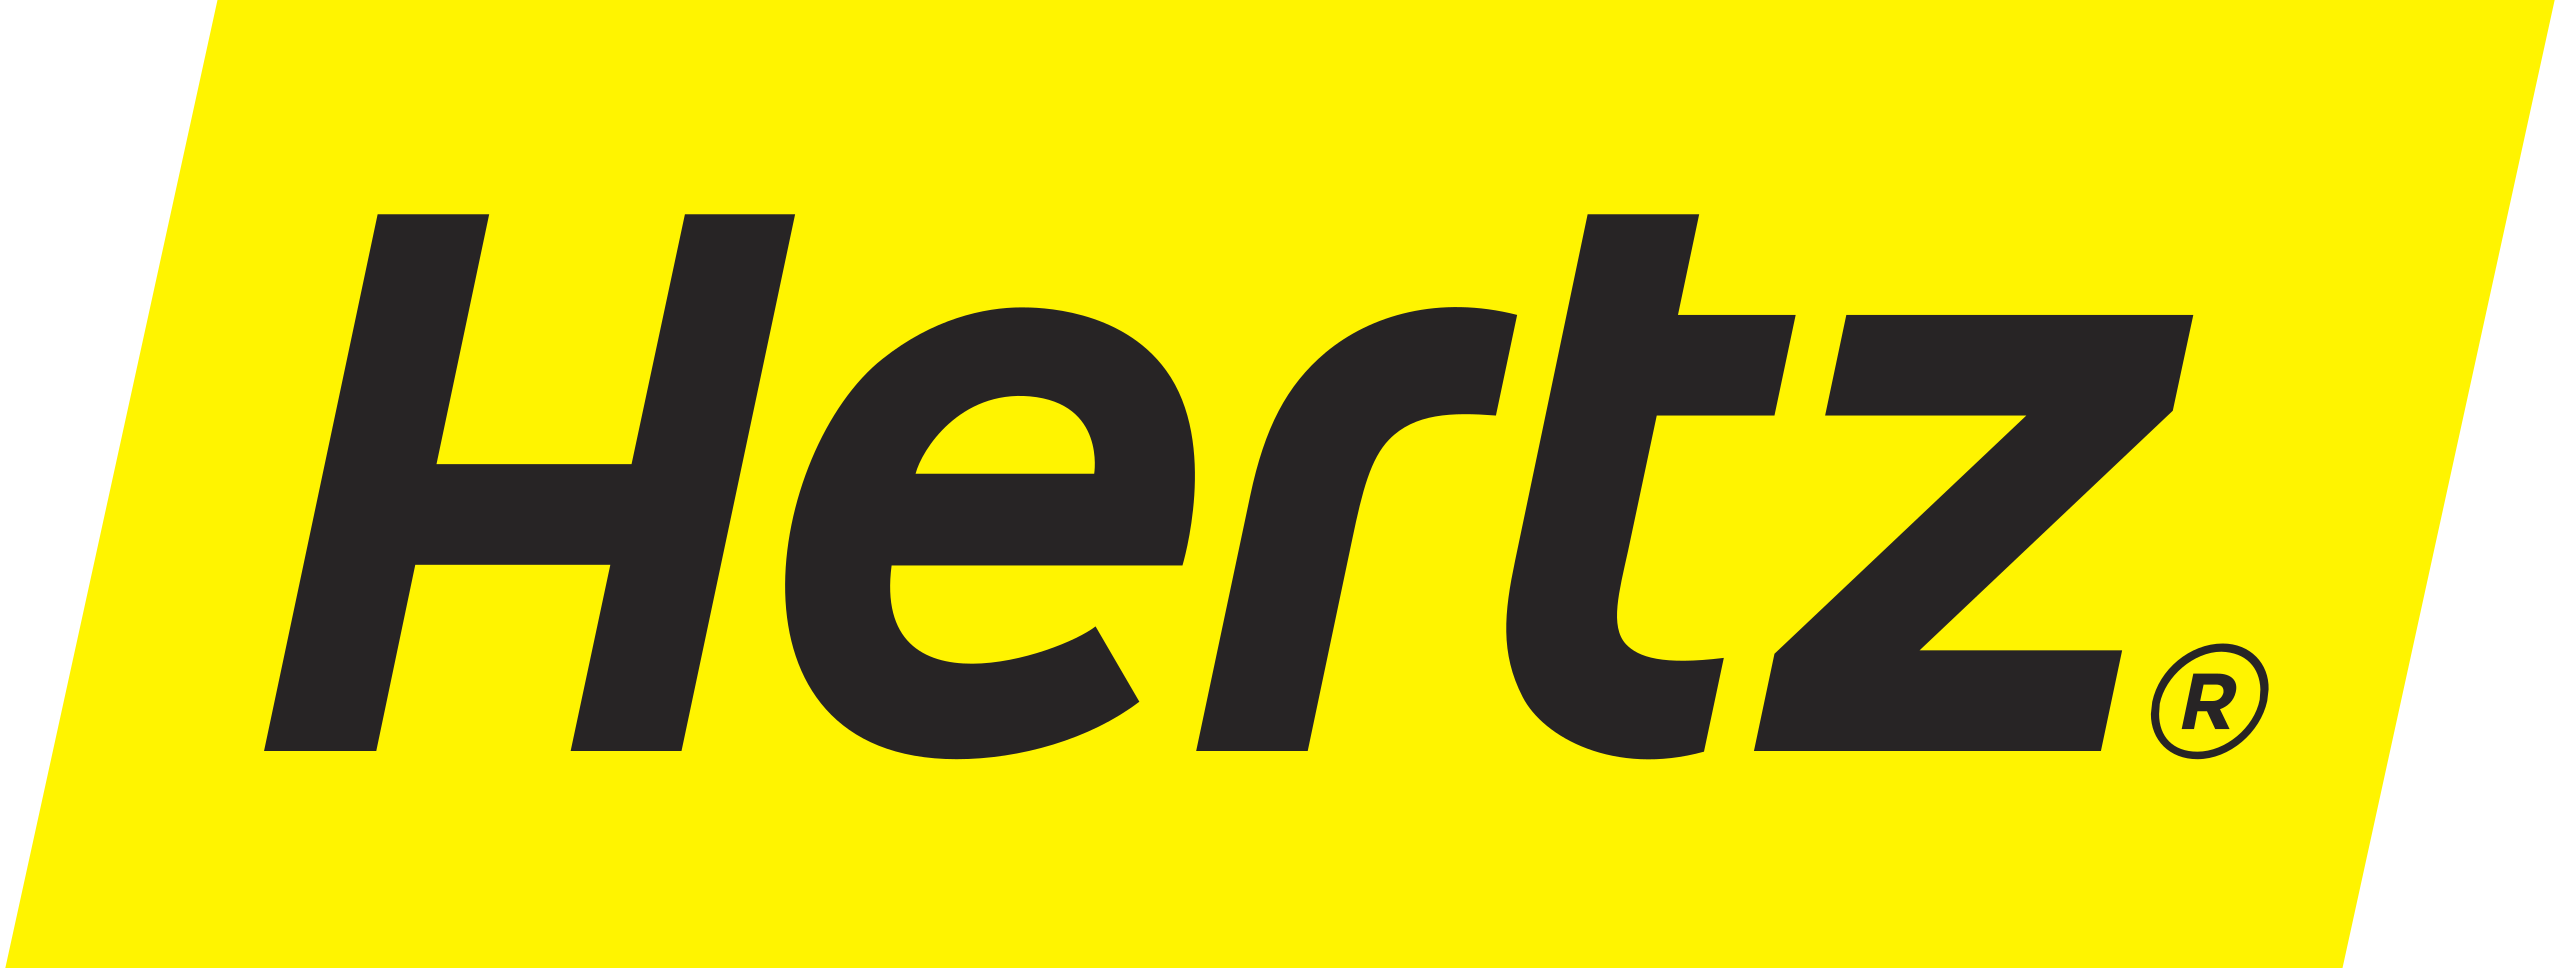 2560Px Hertz Logo.Svg